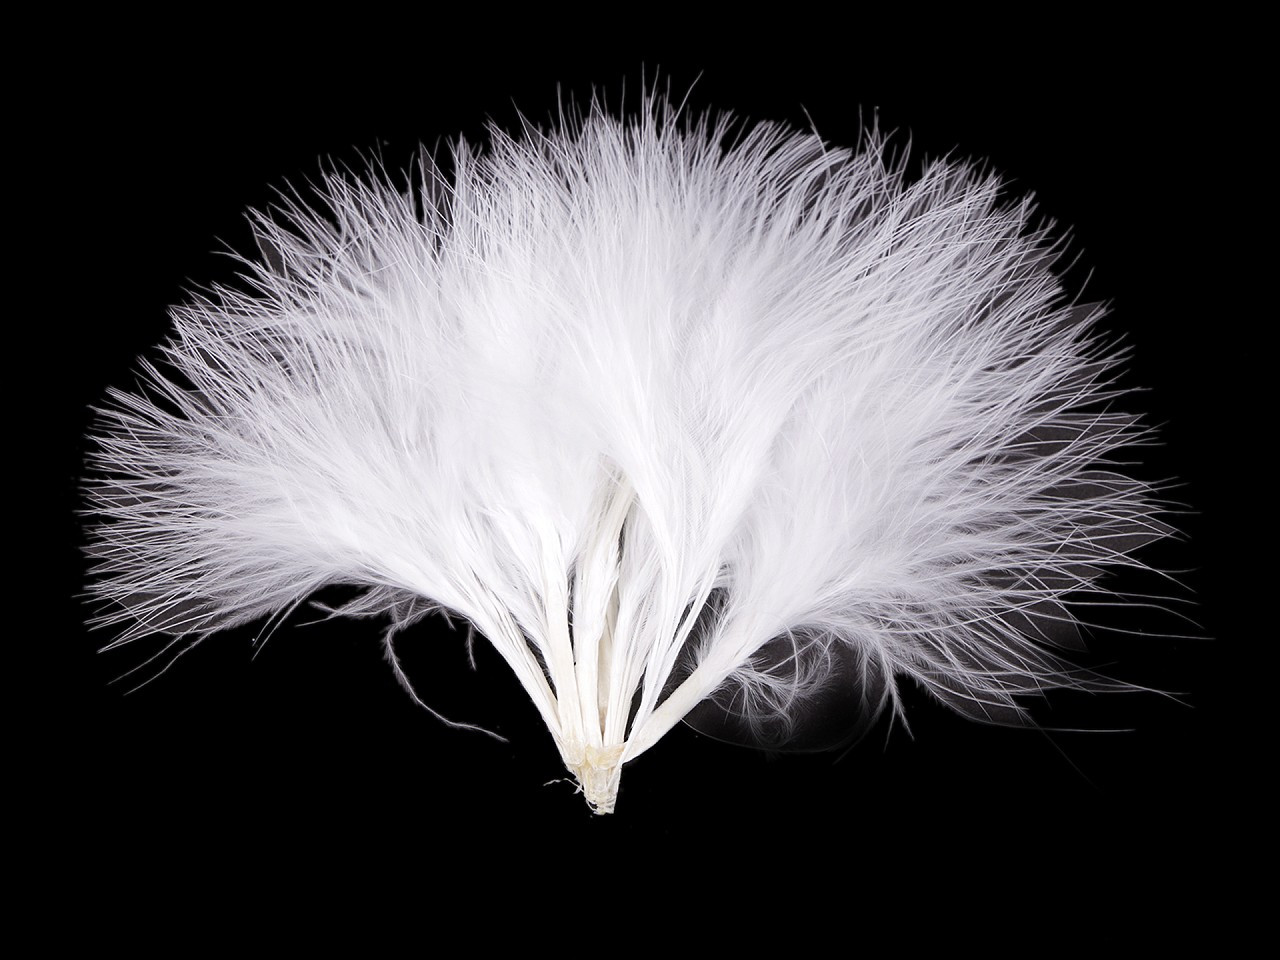 Peří marabu délka 5-12 cm, barva 1 bílá